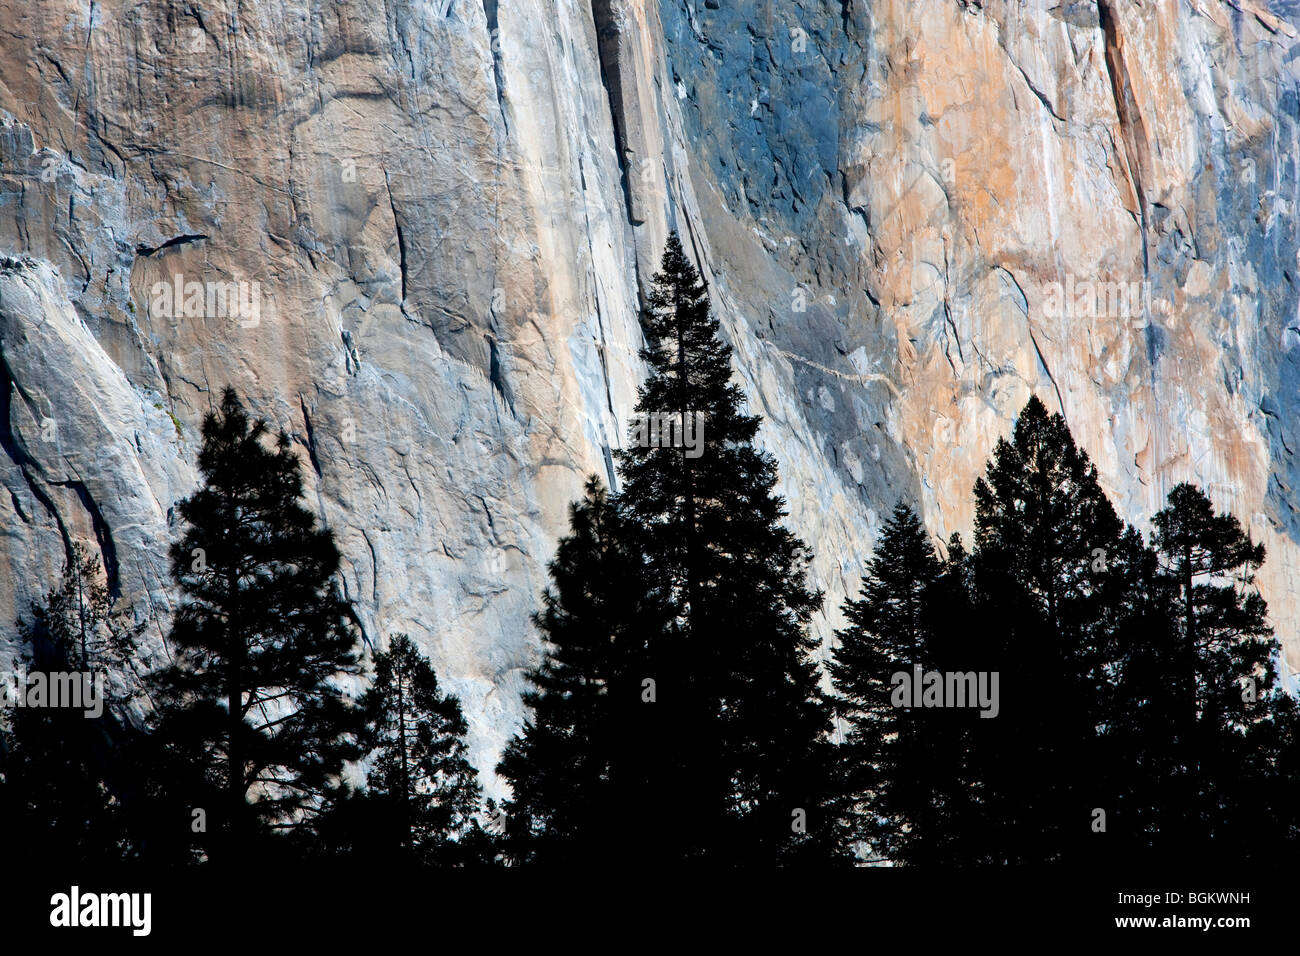 El Capitan avec silhouette d'arbres. Yosemite National Park, Californie Banque D'Images